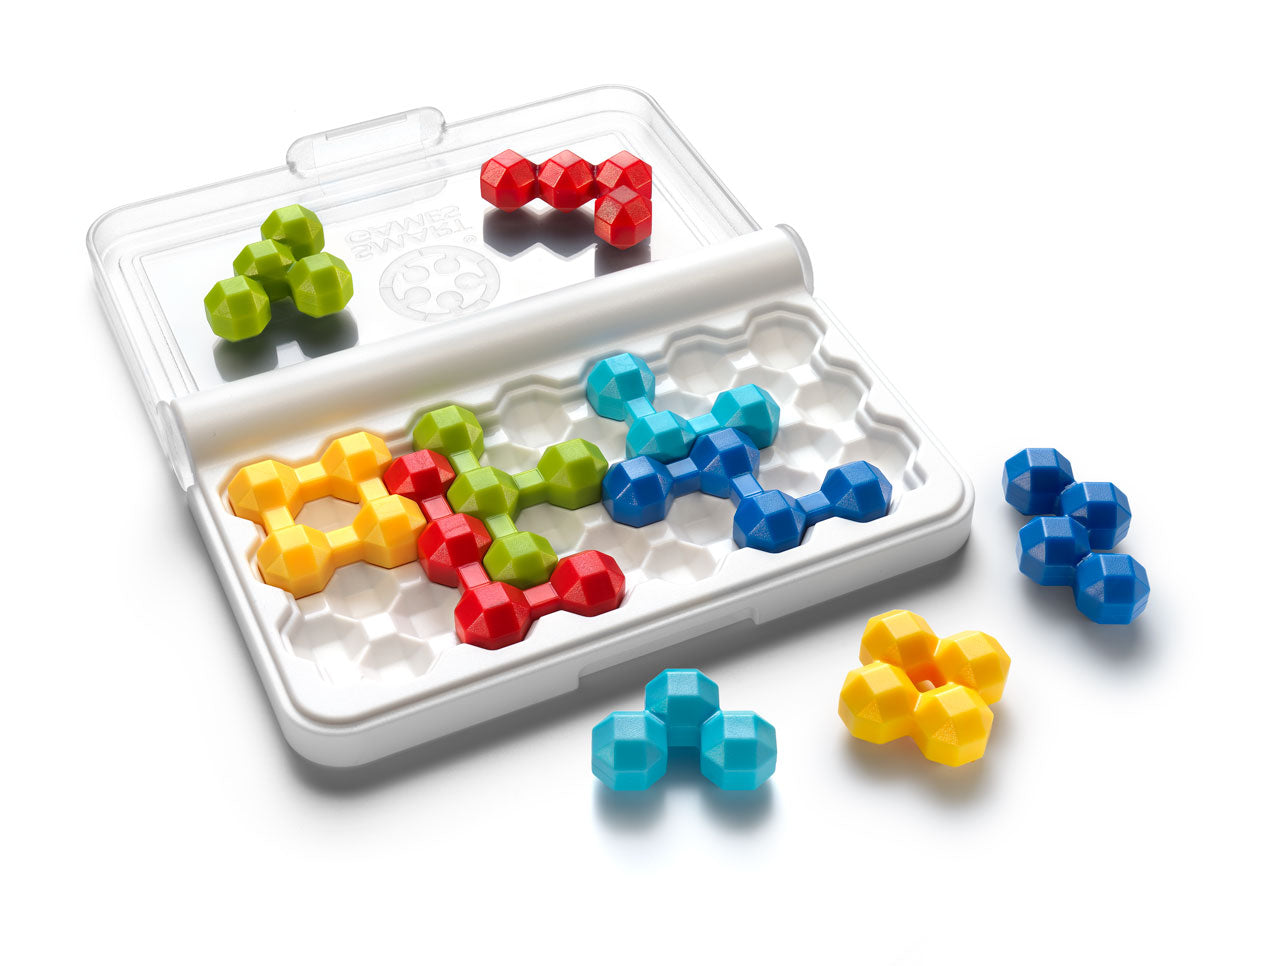 Smart Games IQ Perplex Puzzle Game - Suite Child